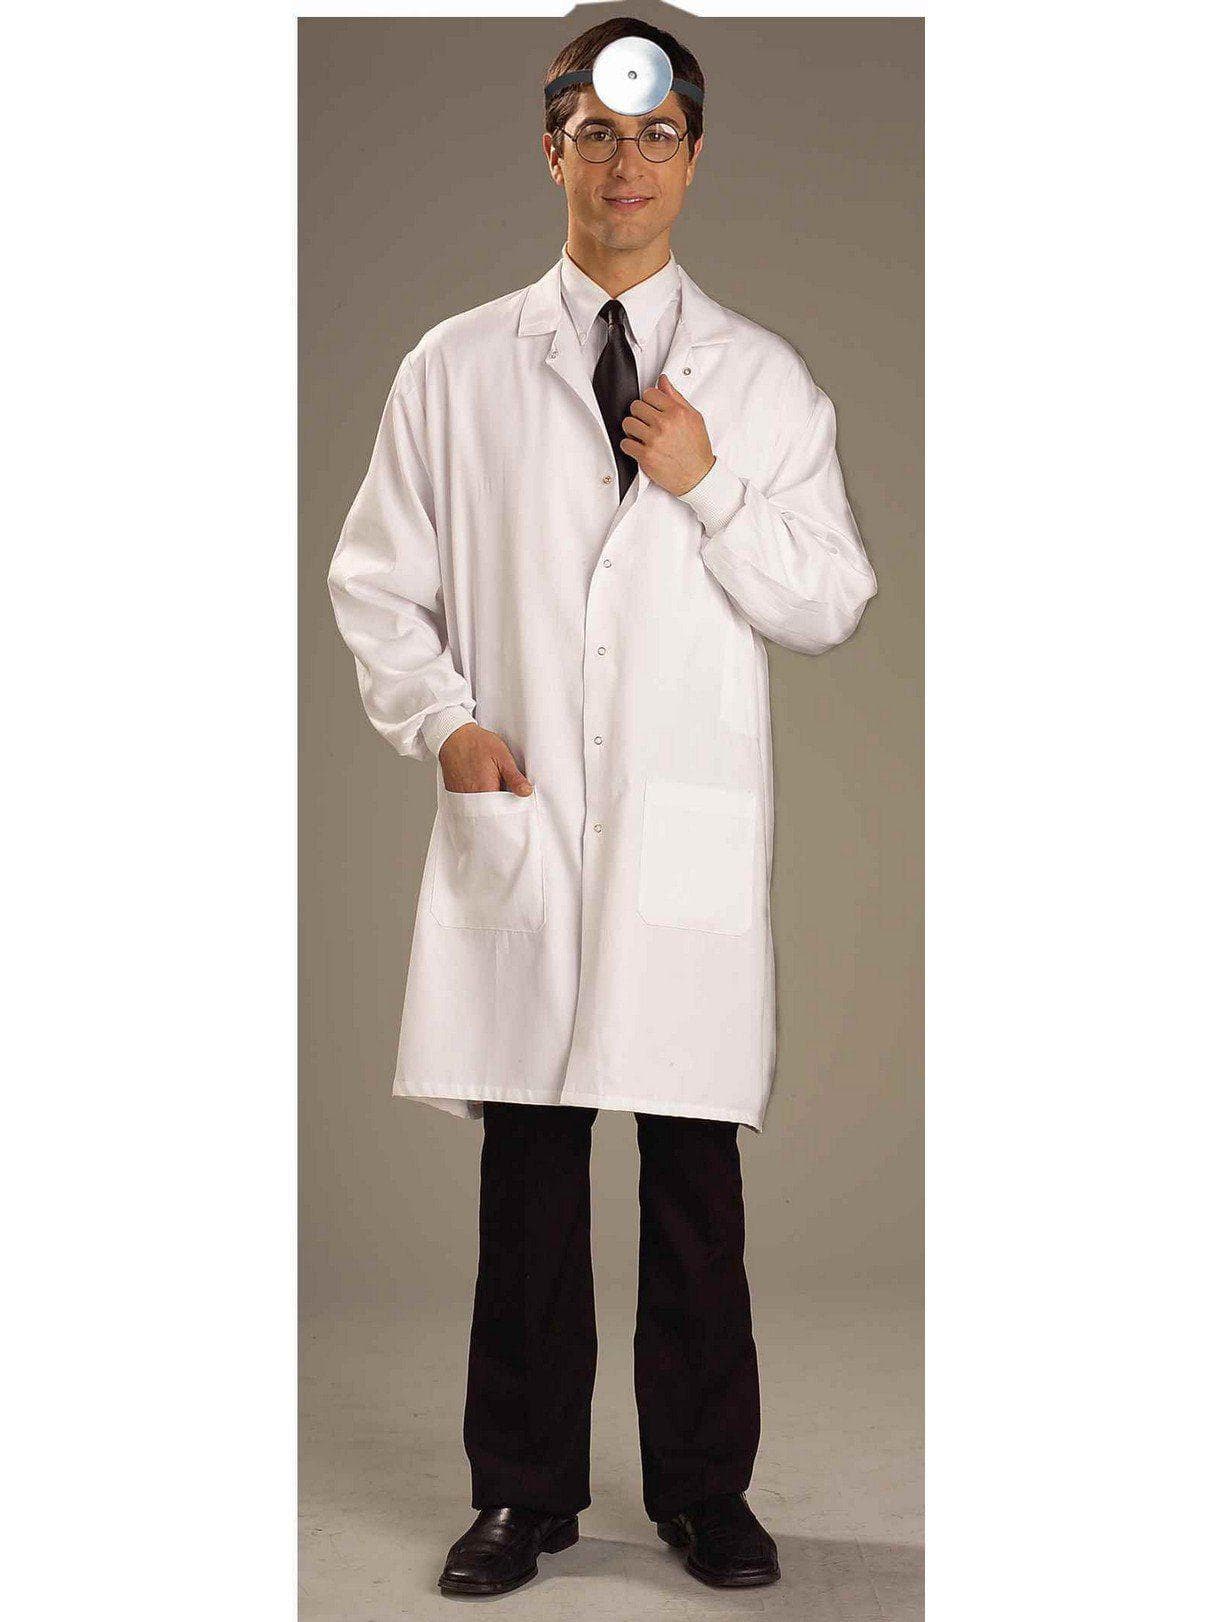 Adult Dr. Lab Coat Costume - costumes.com